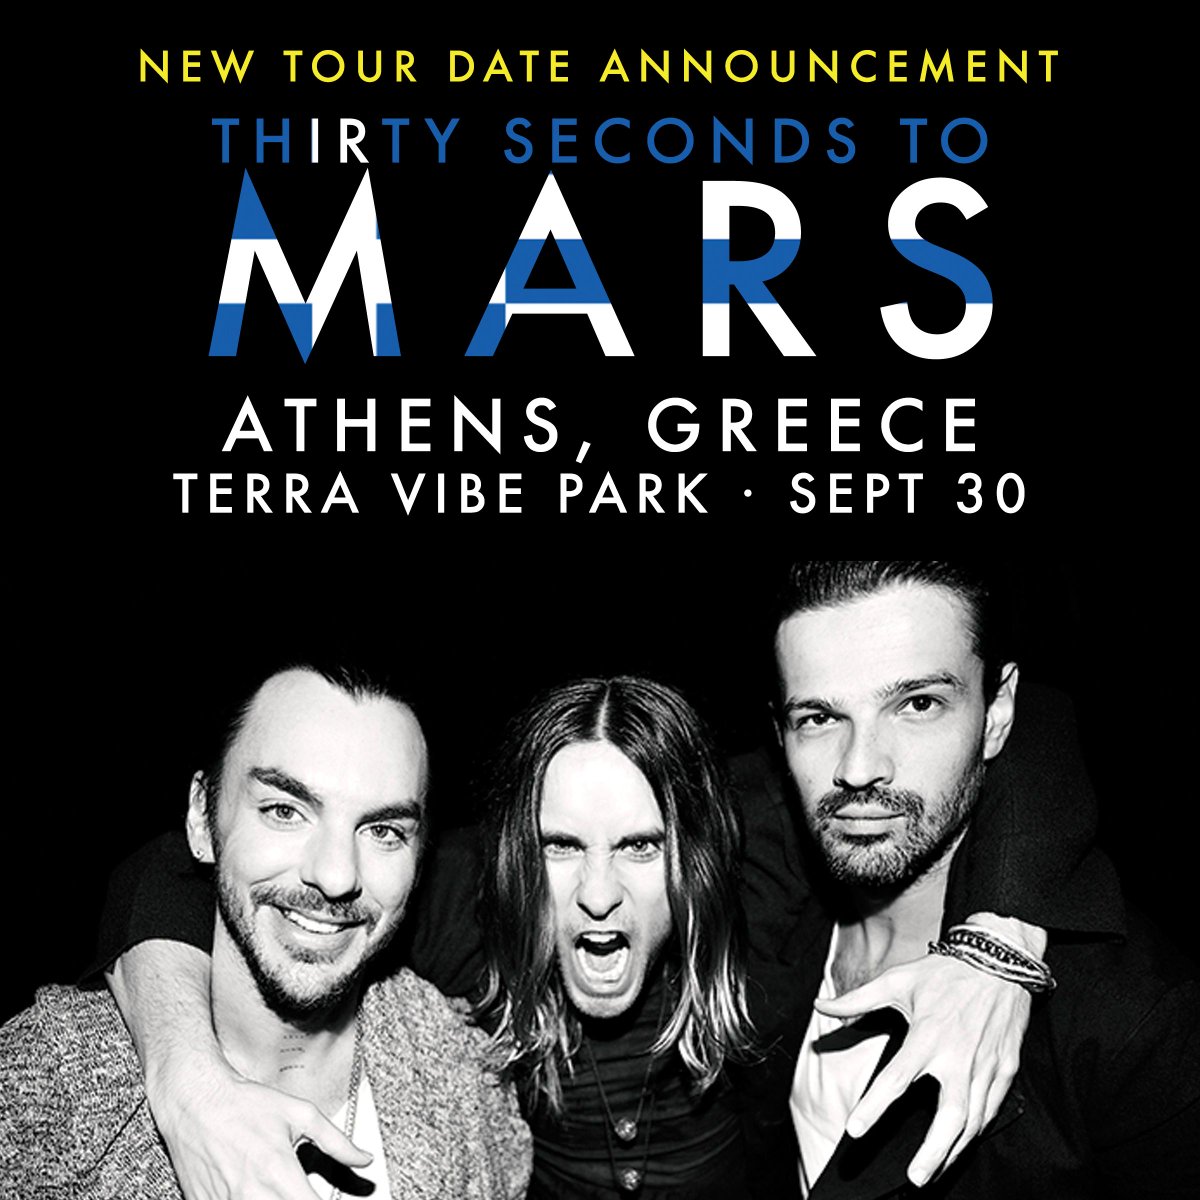 GREECE. #MarsIsComing. Tix: http://t.co/vHnc0bqpFc • VIP: http://t.co/PCD3yC05mT http://t.co/l2lyuuQQZa